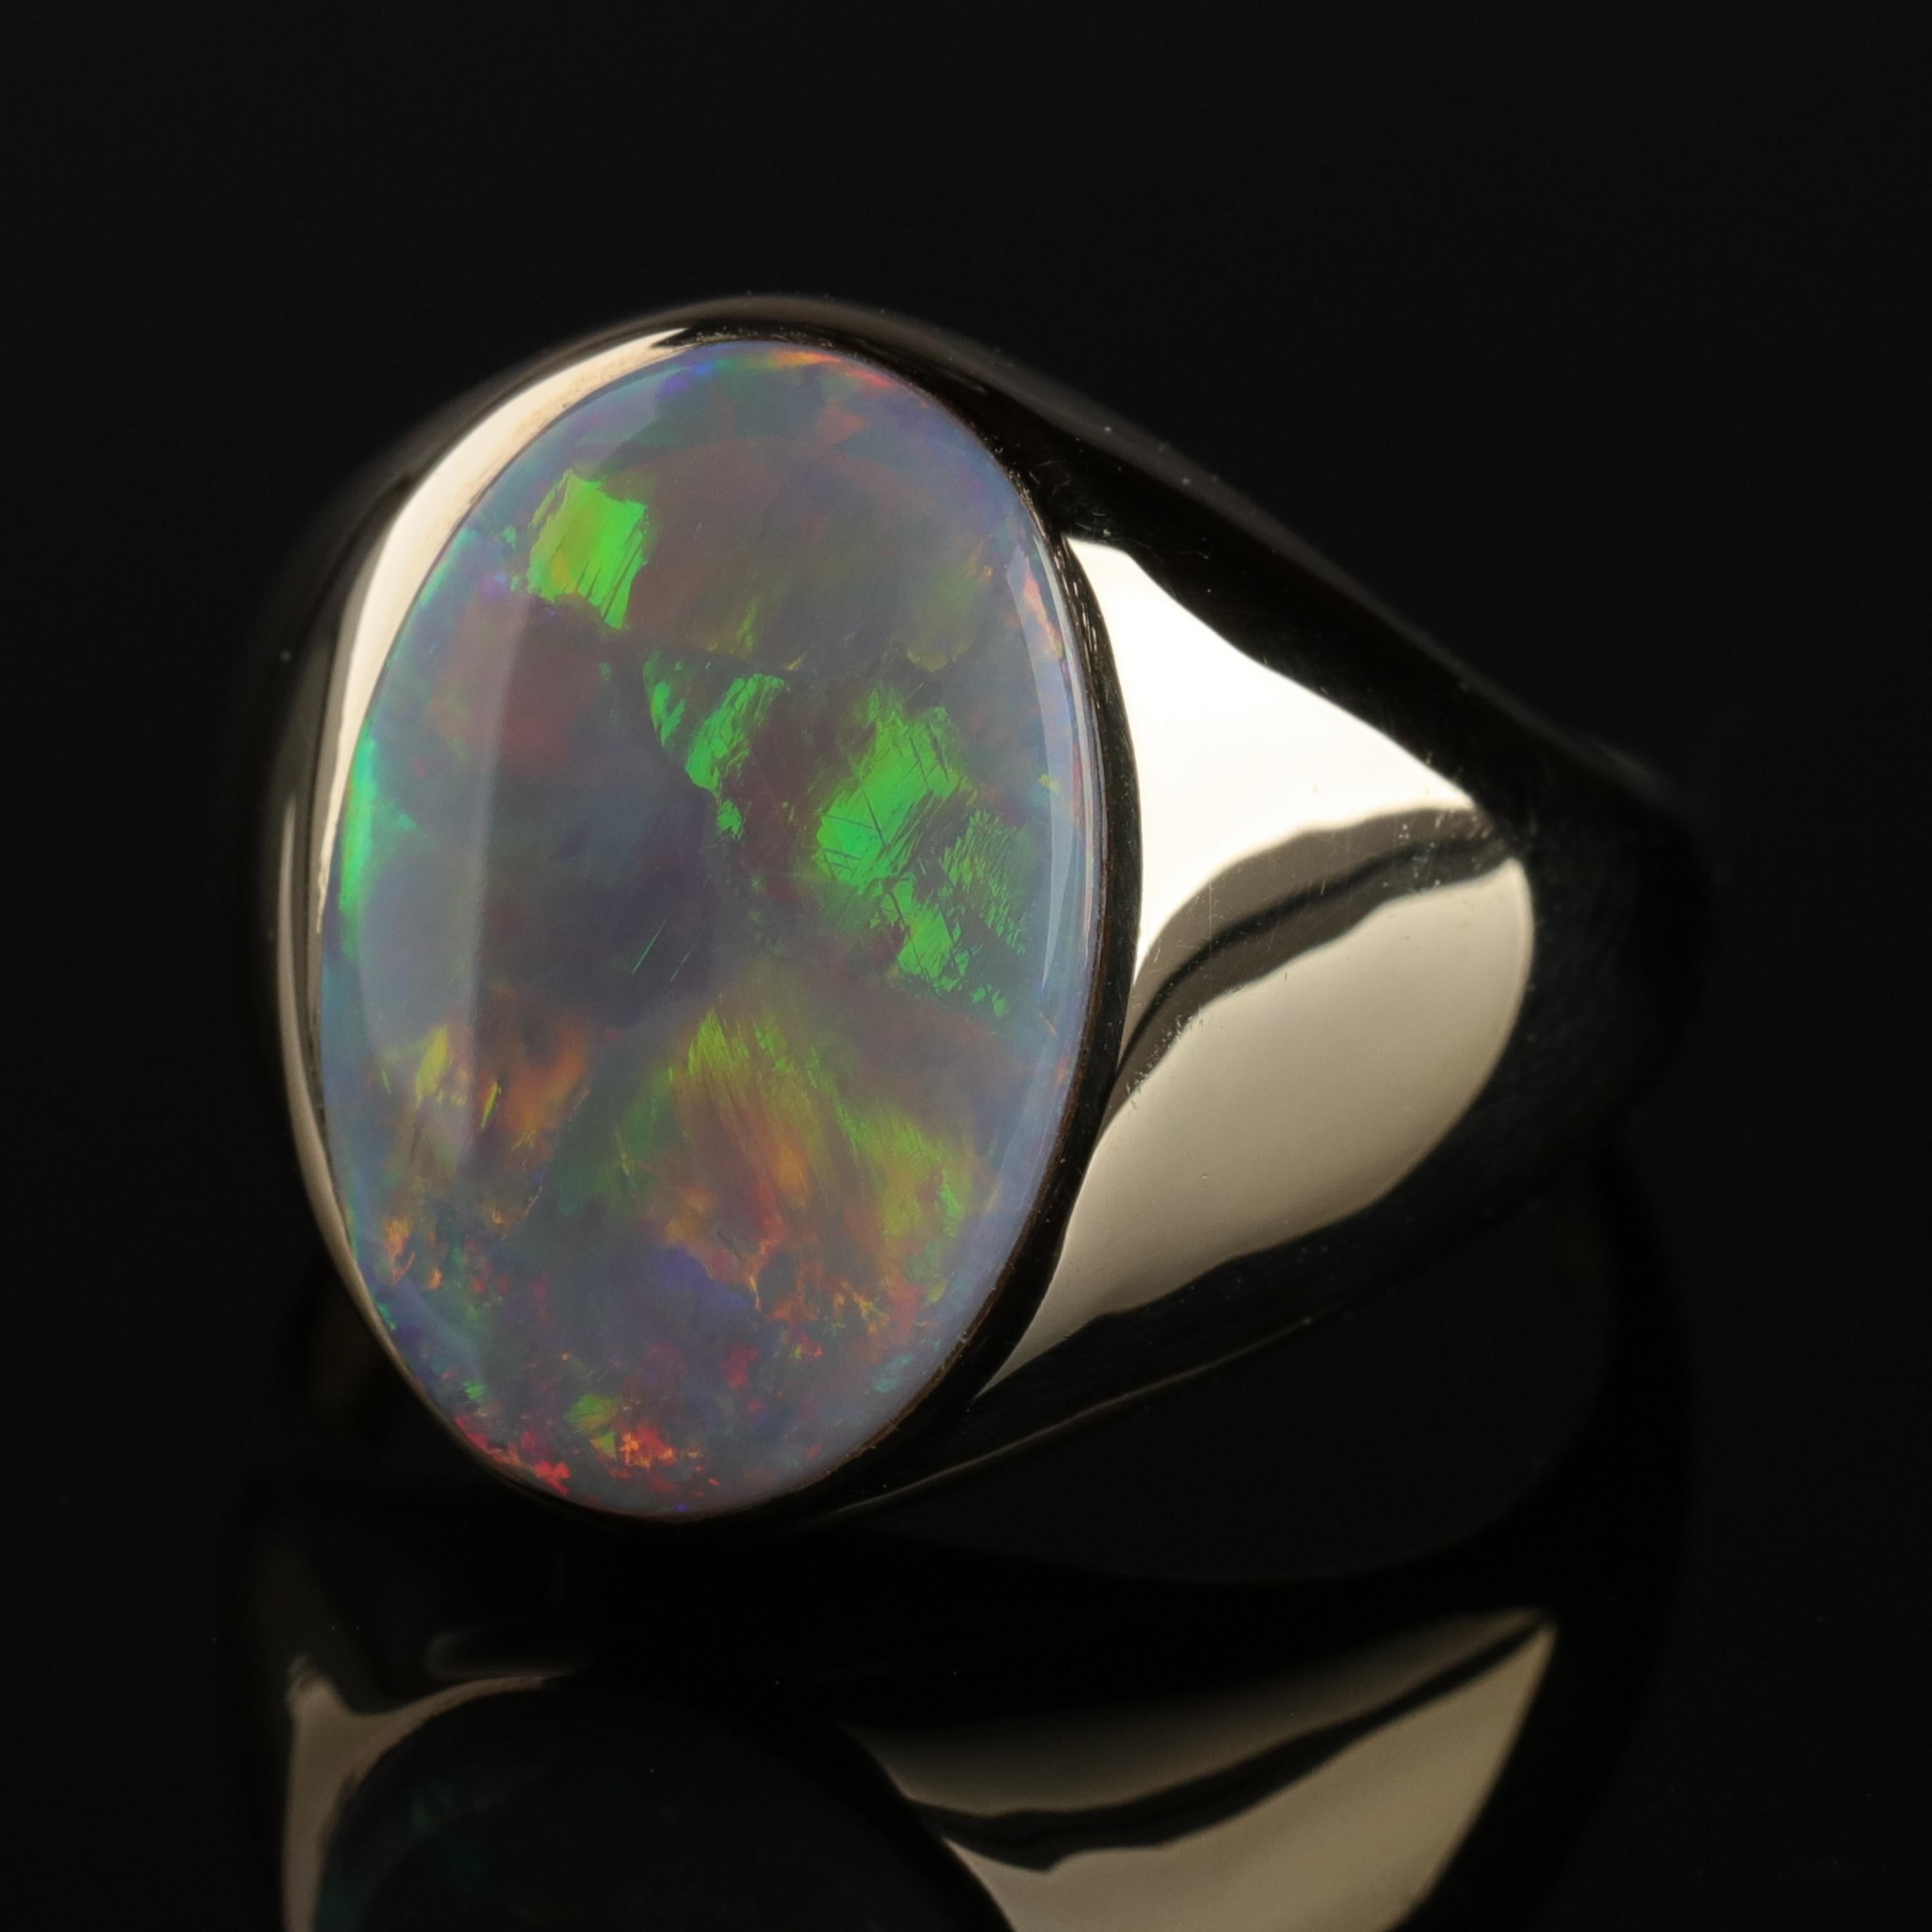 Men's Australian White Opal Ring with Full Spectrum Broad Flash 6